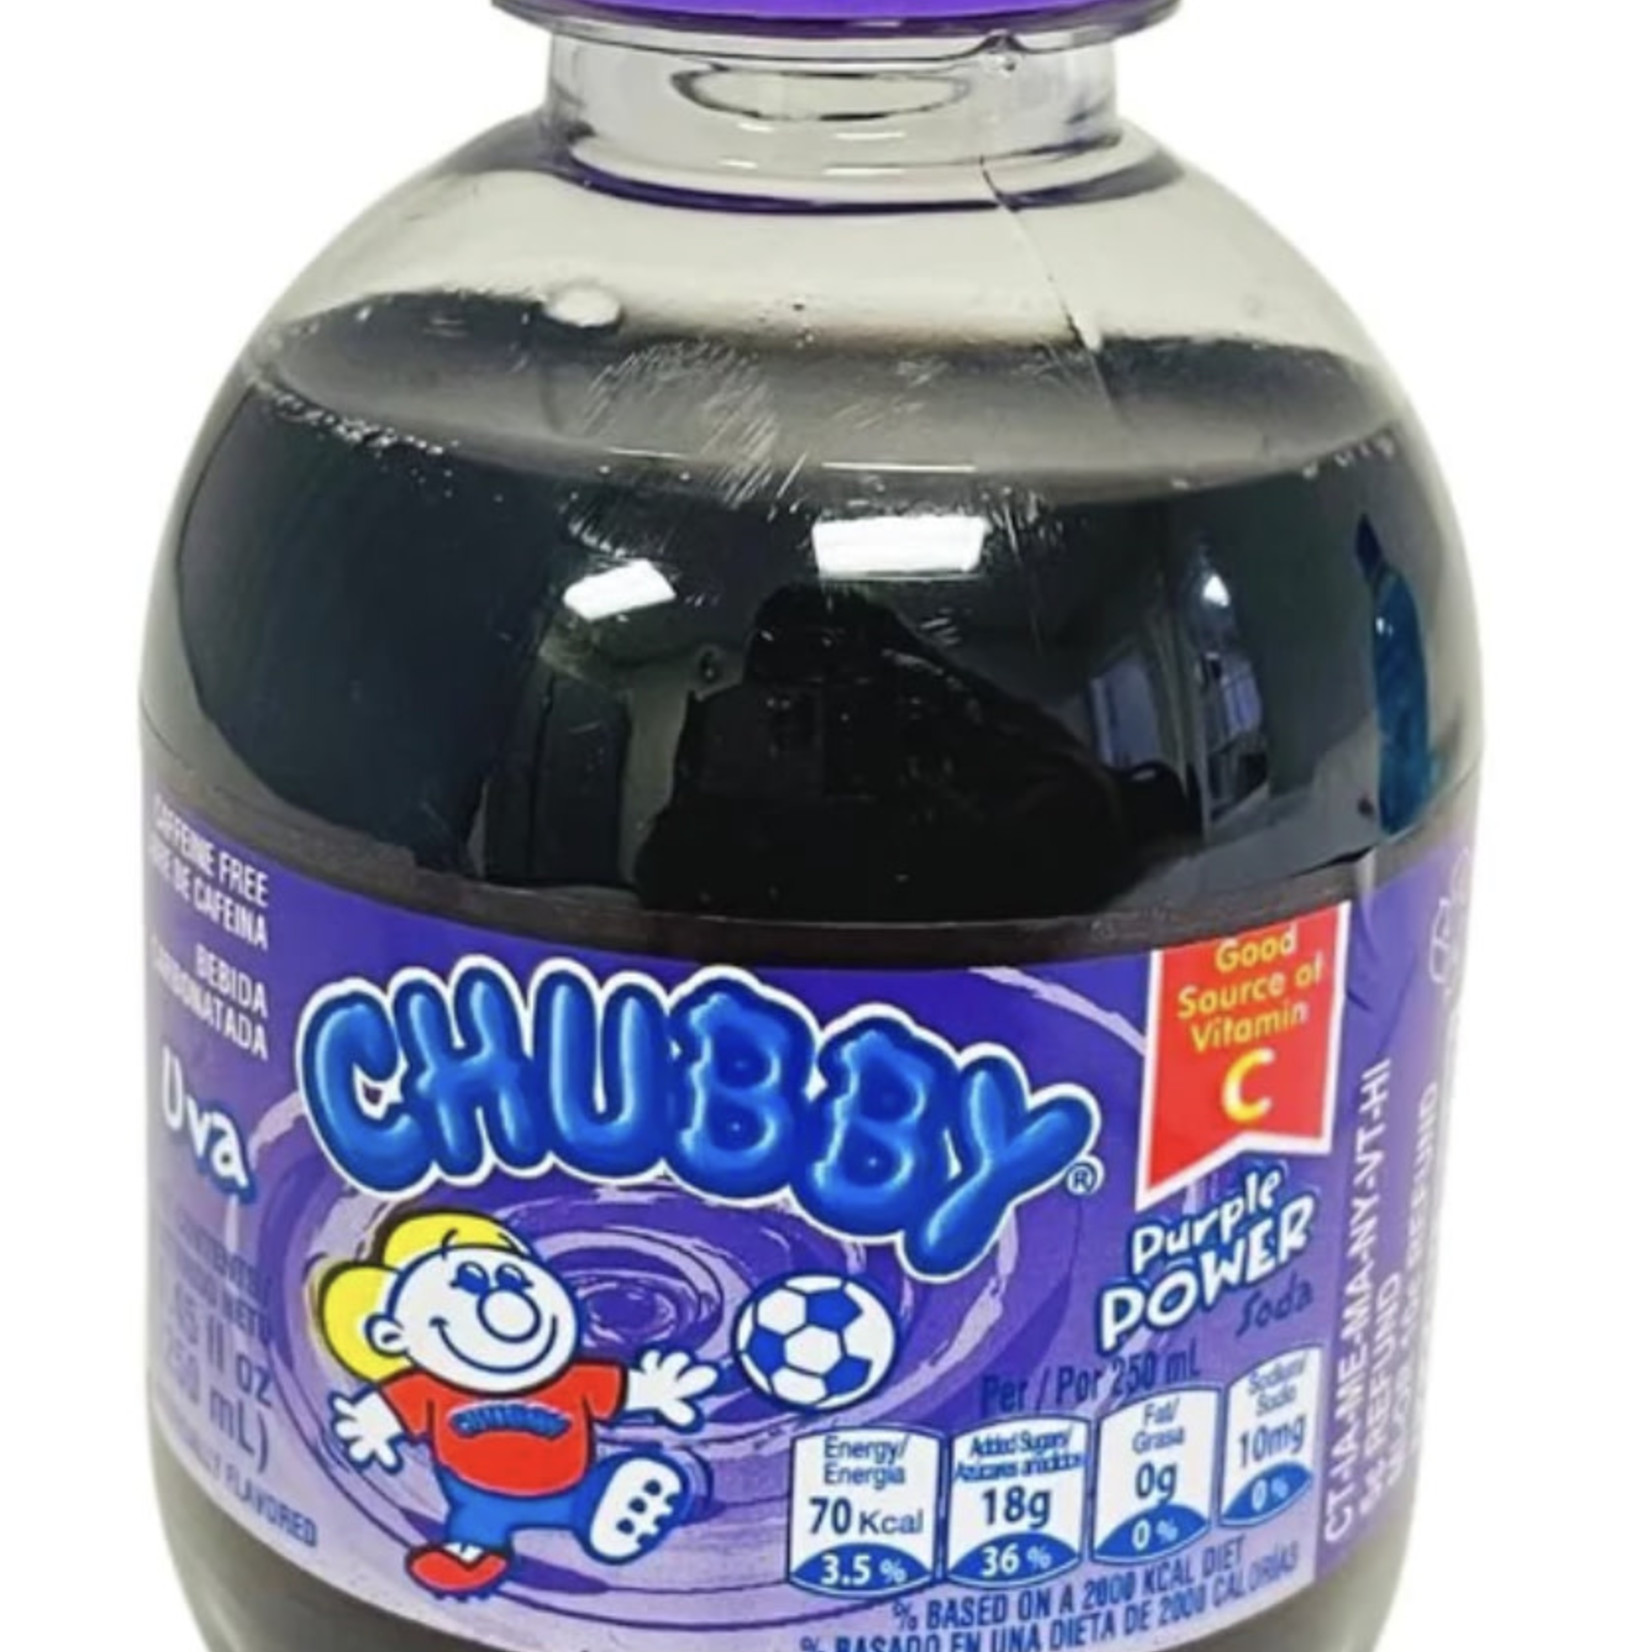 Chubby Purple Power (Bottle)